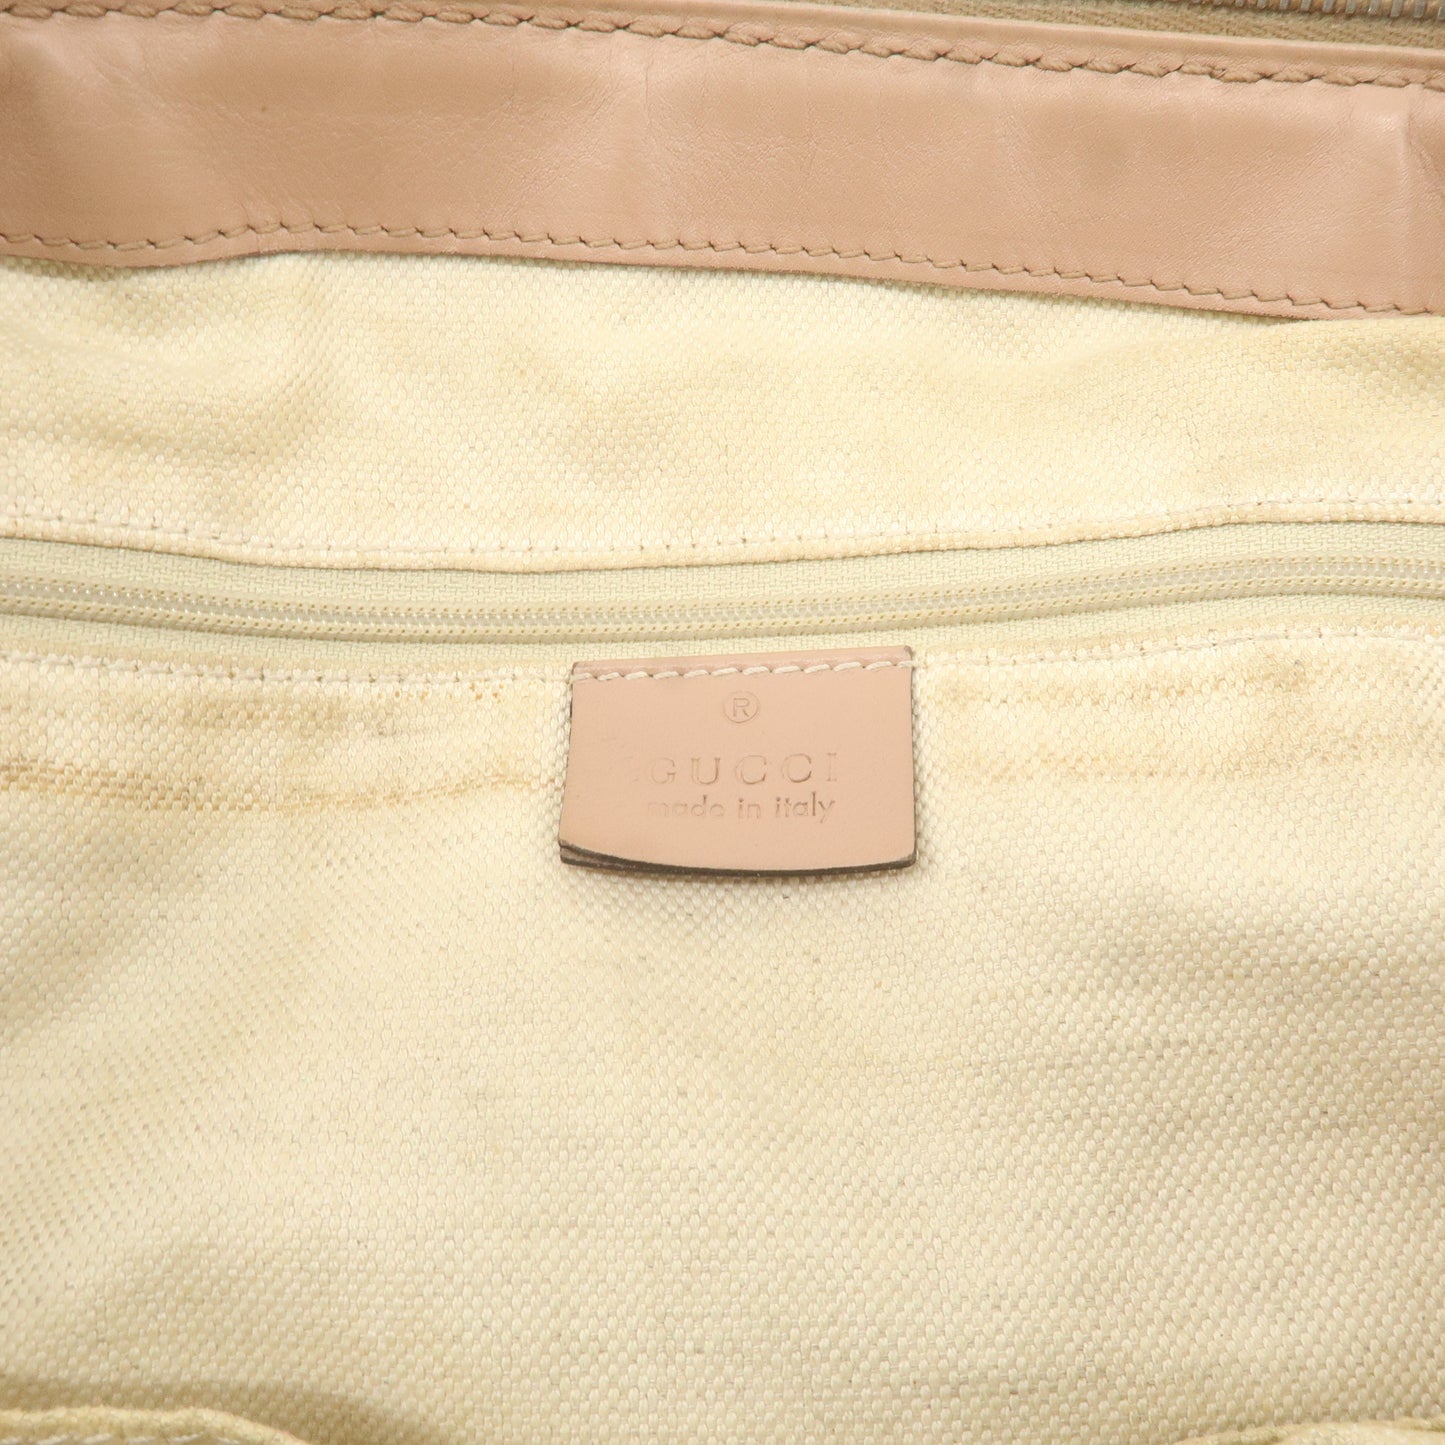 GUCCI Diamante Sukey Canvas Leather 2Way Shoulder Bag 247902